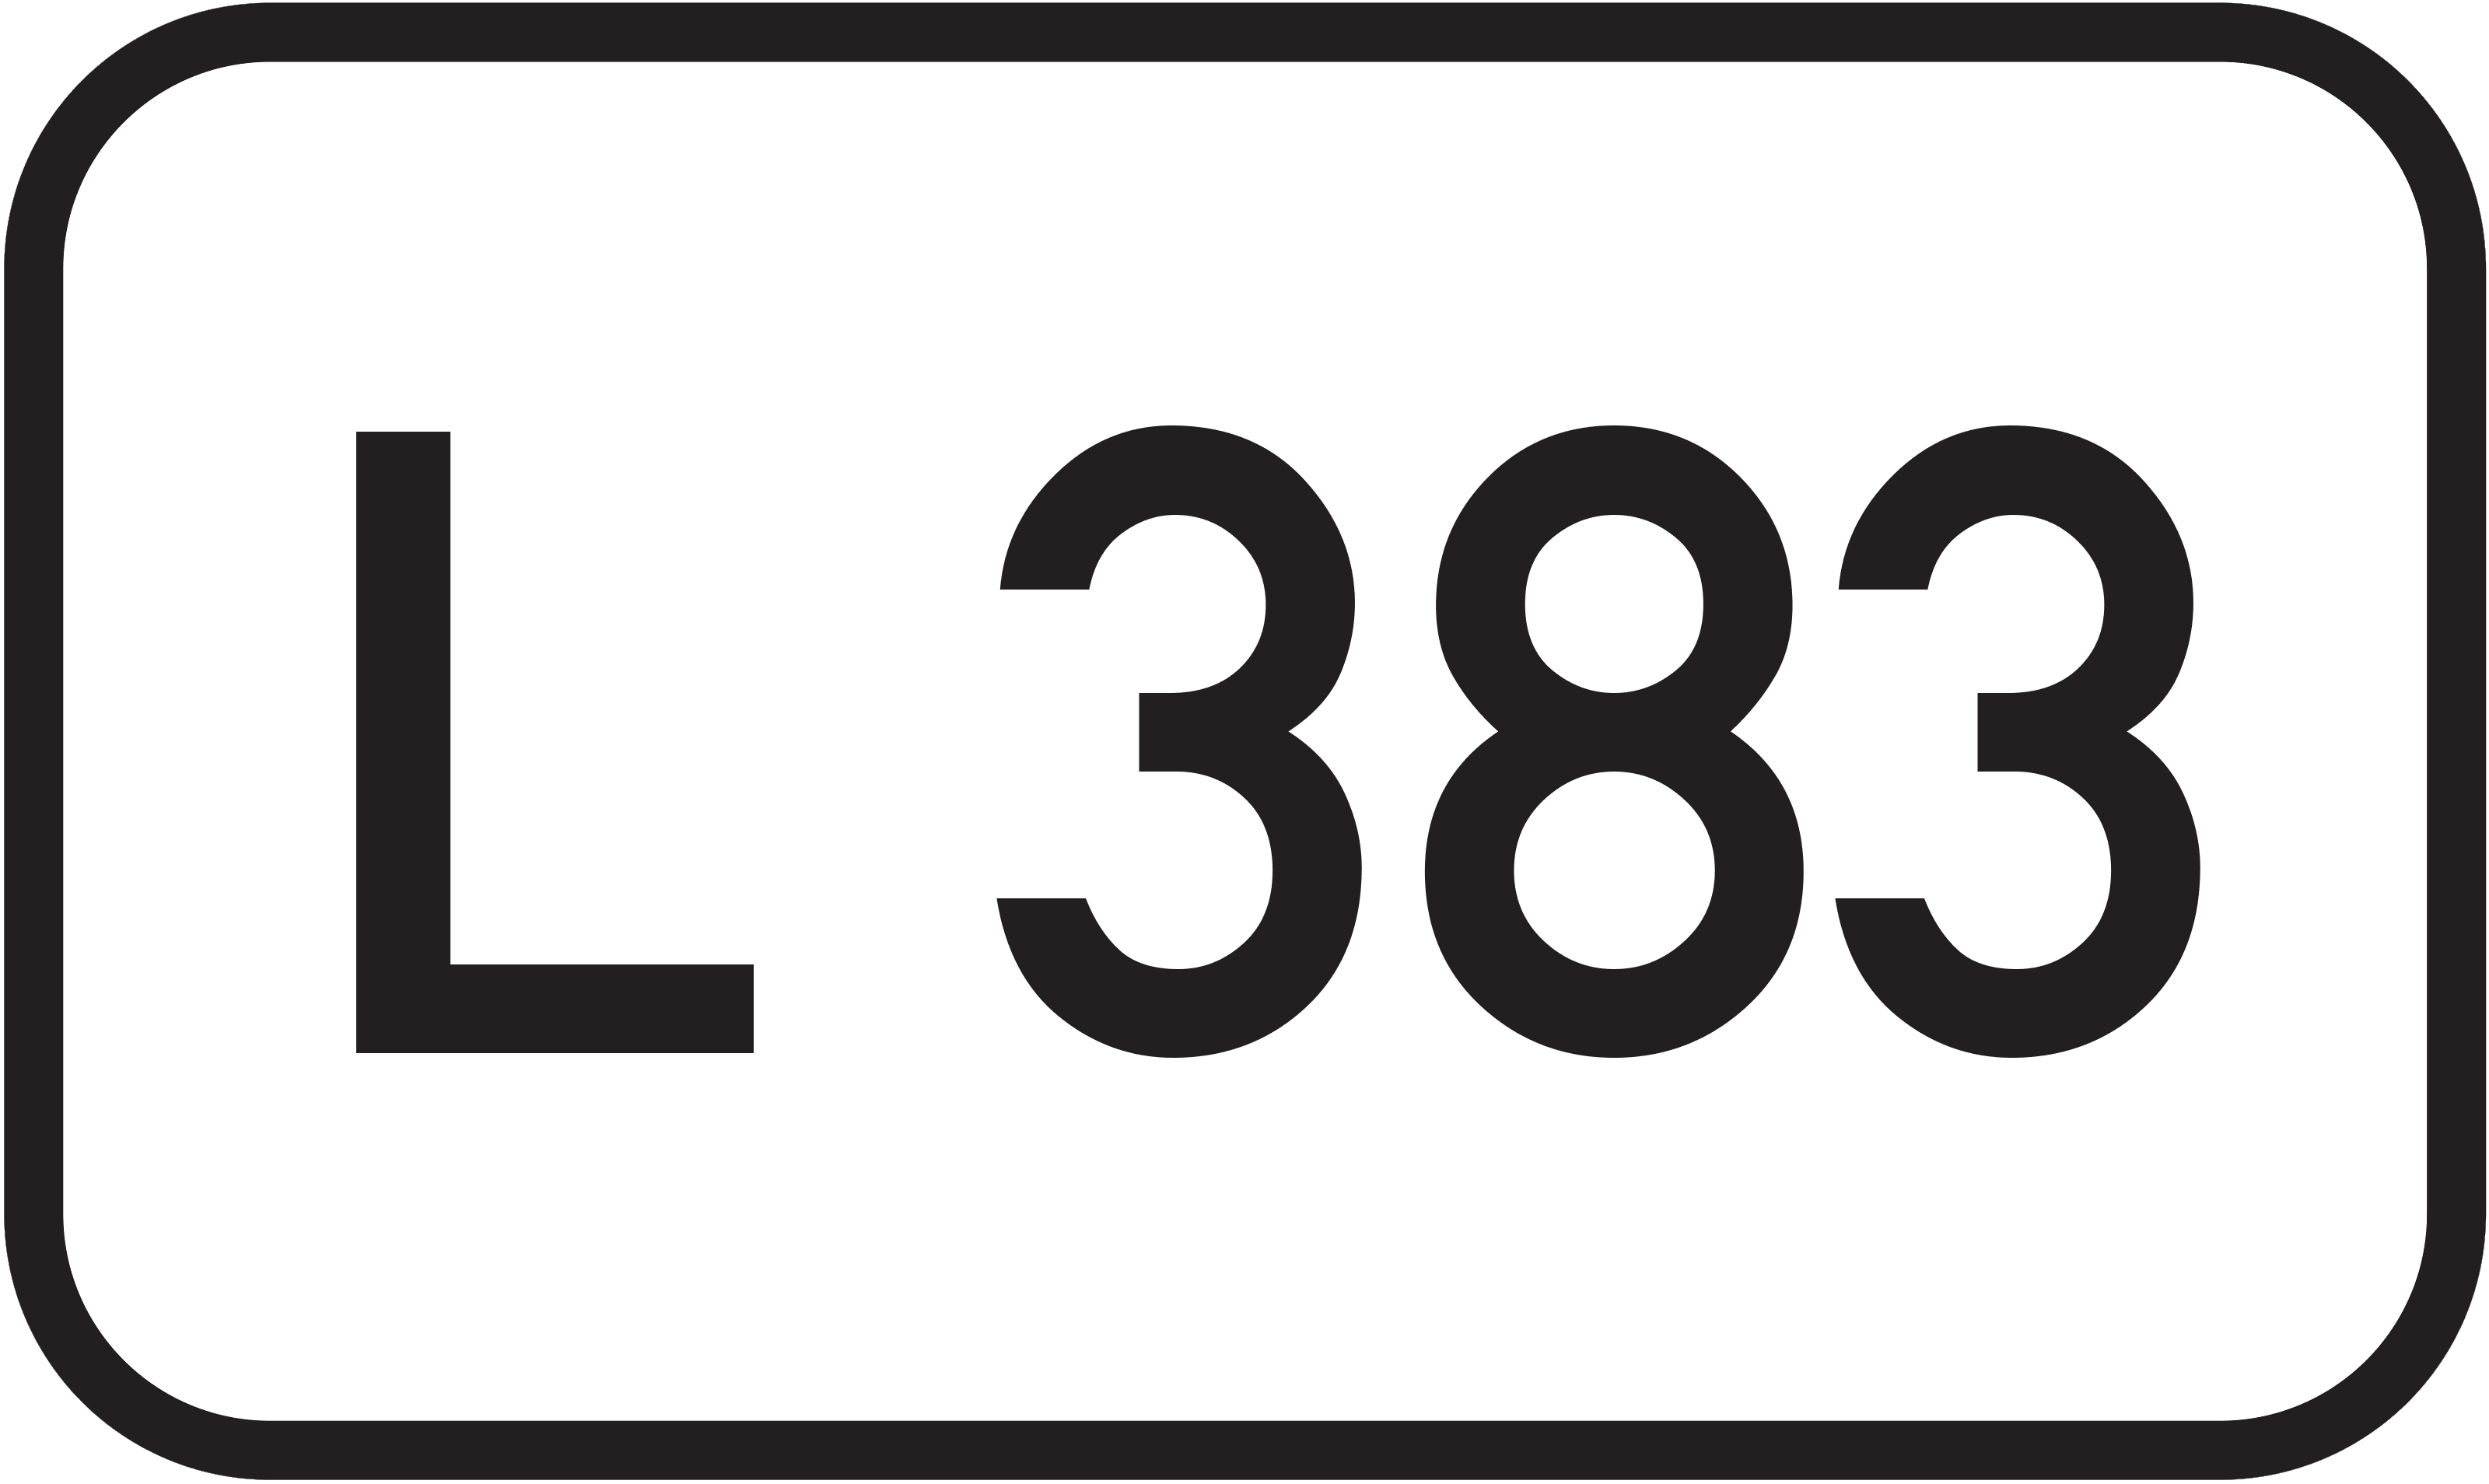 Landesstraße L 383